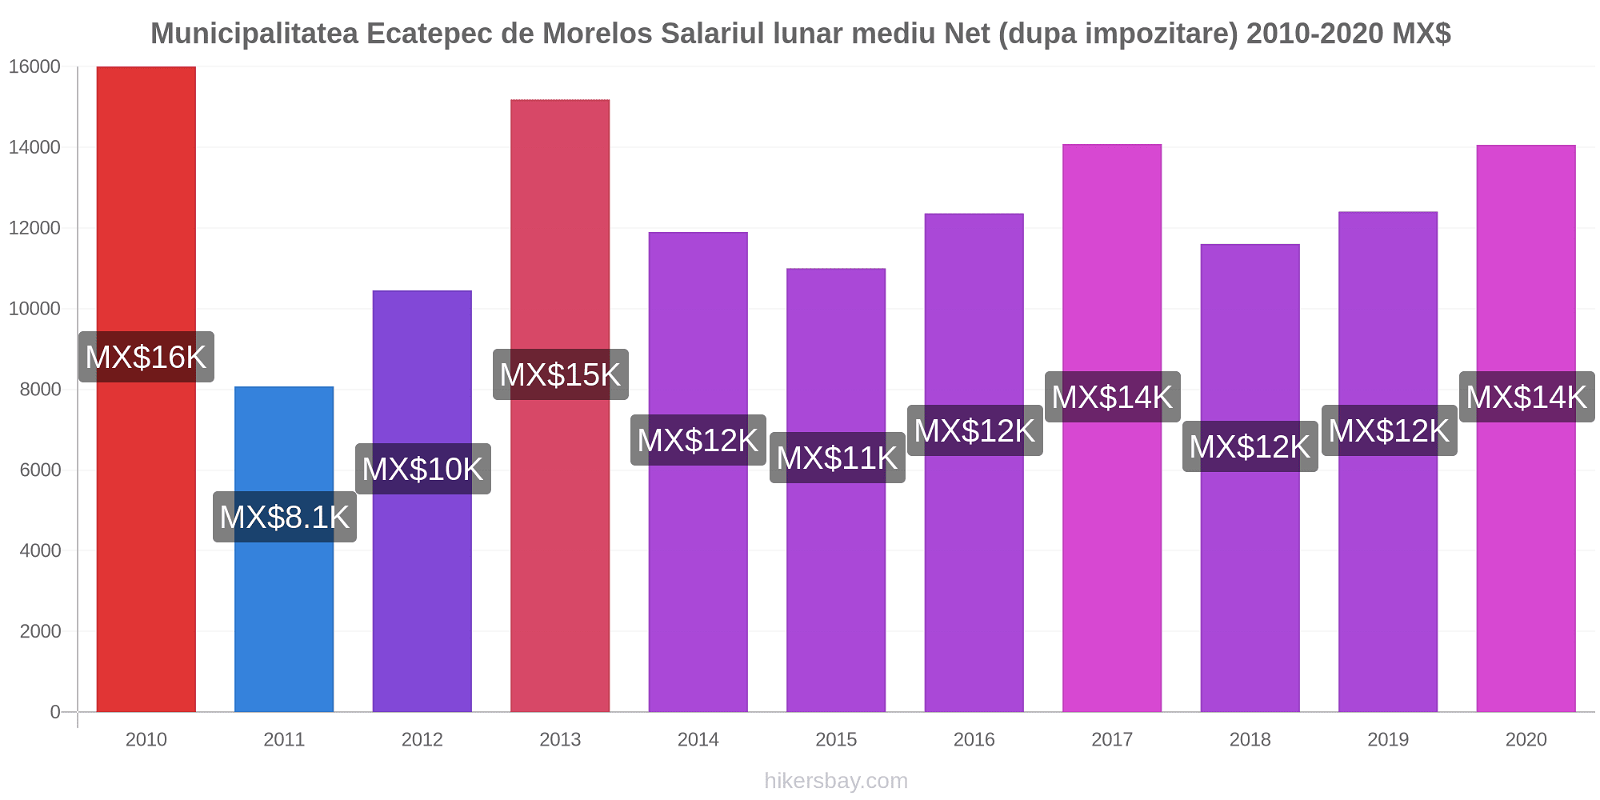 Municipalitatea Ecatepec de Morelos modificări de preț Salariul lunar mediu Net (dupa impozitare) hikersbay.com